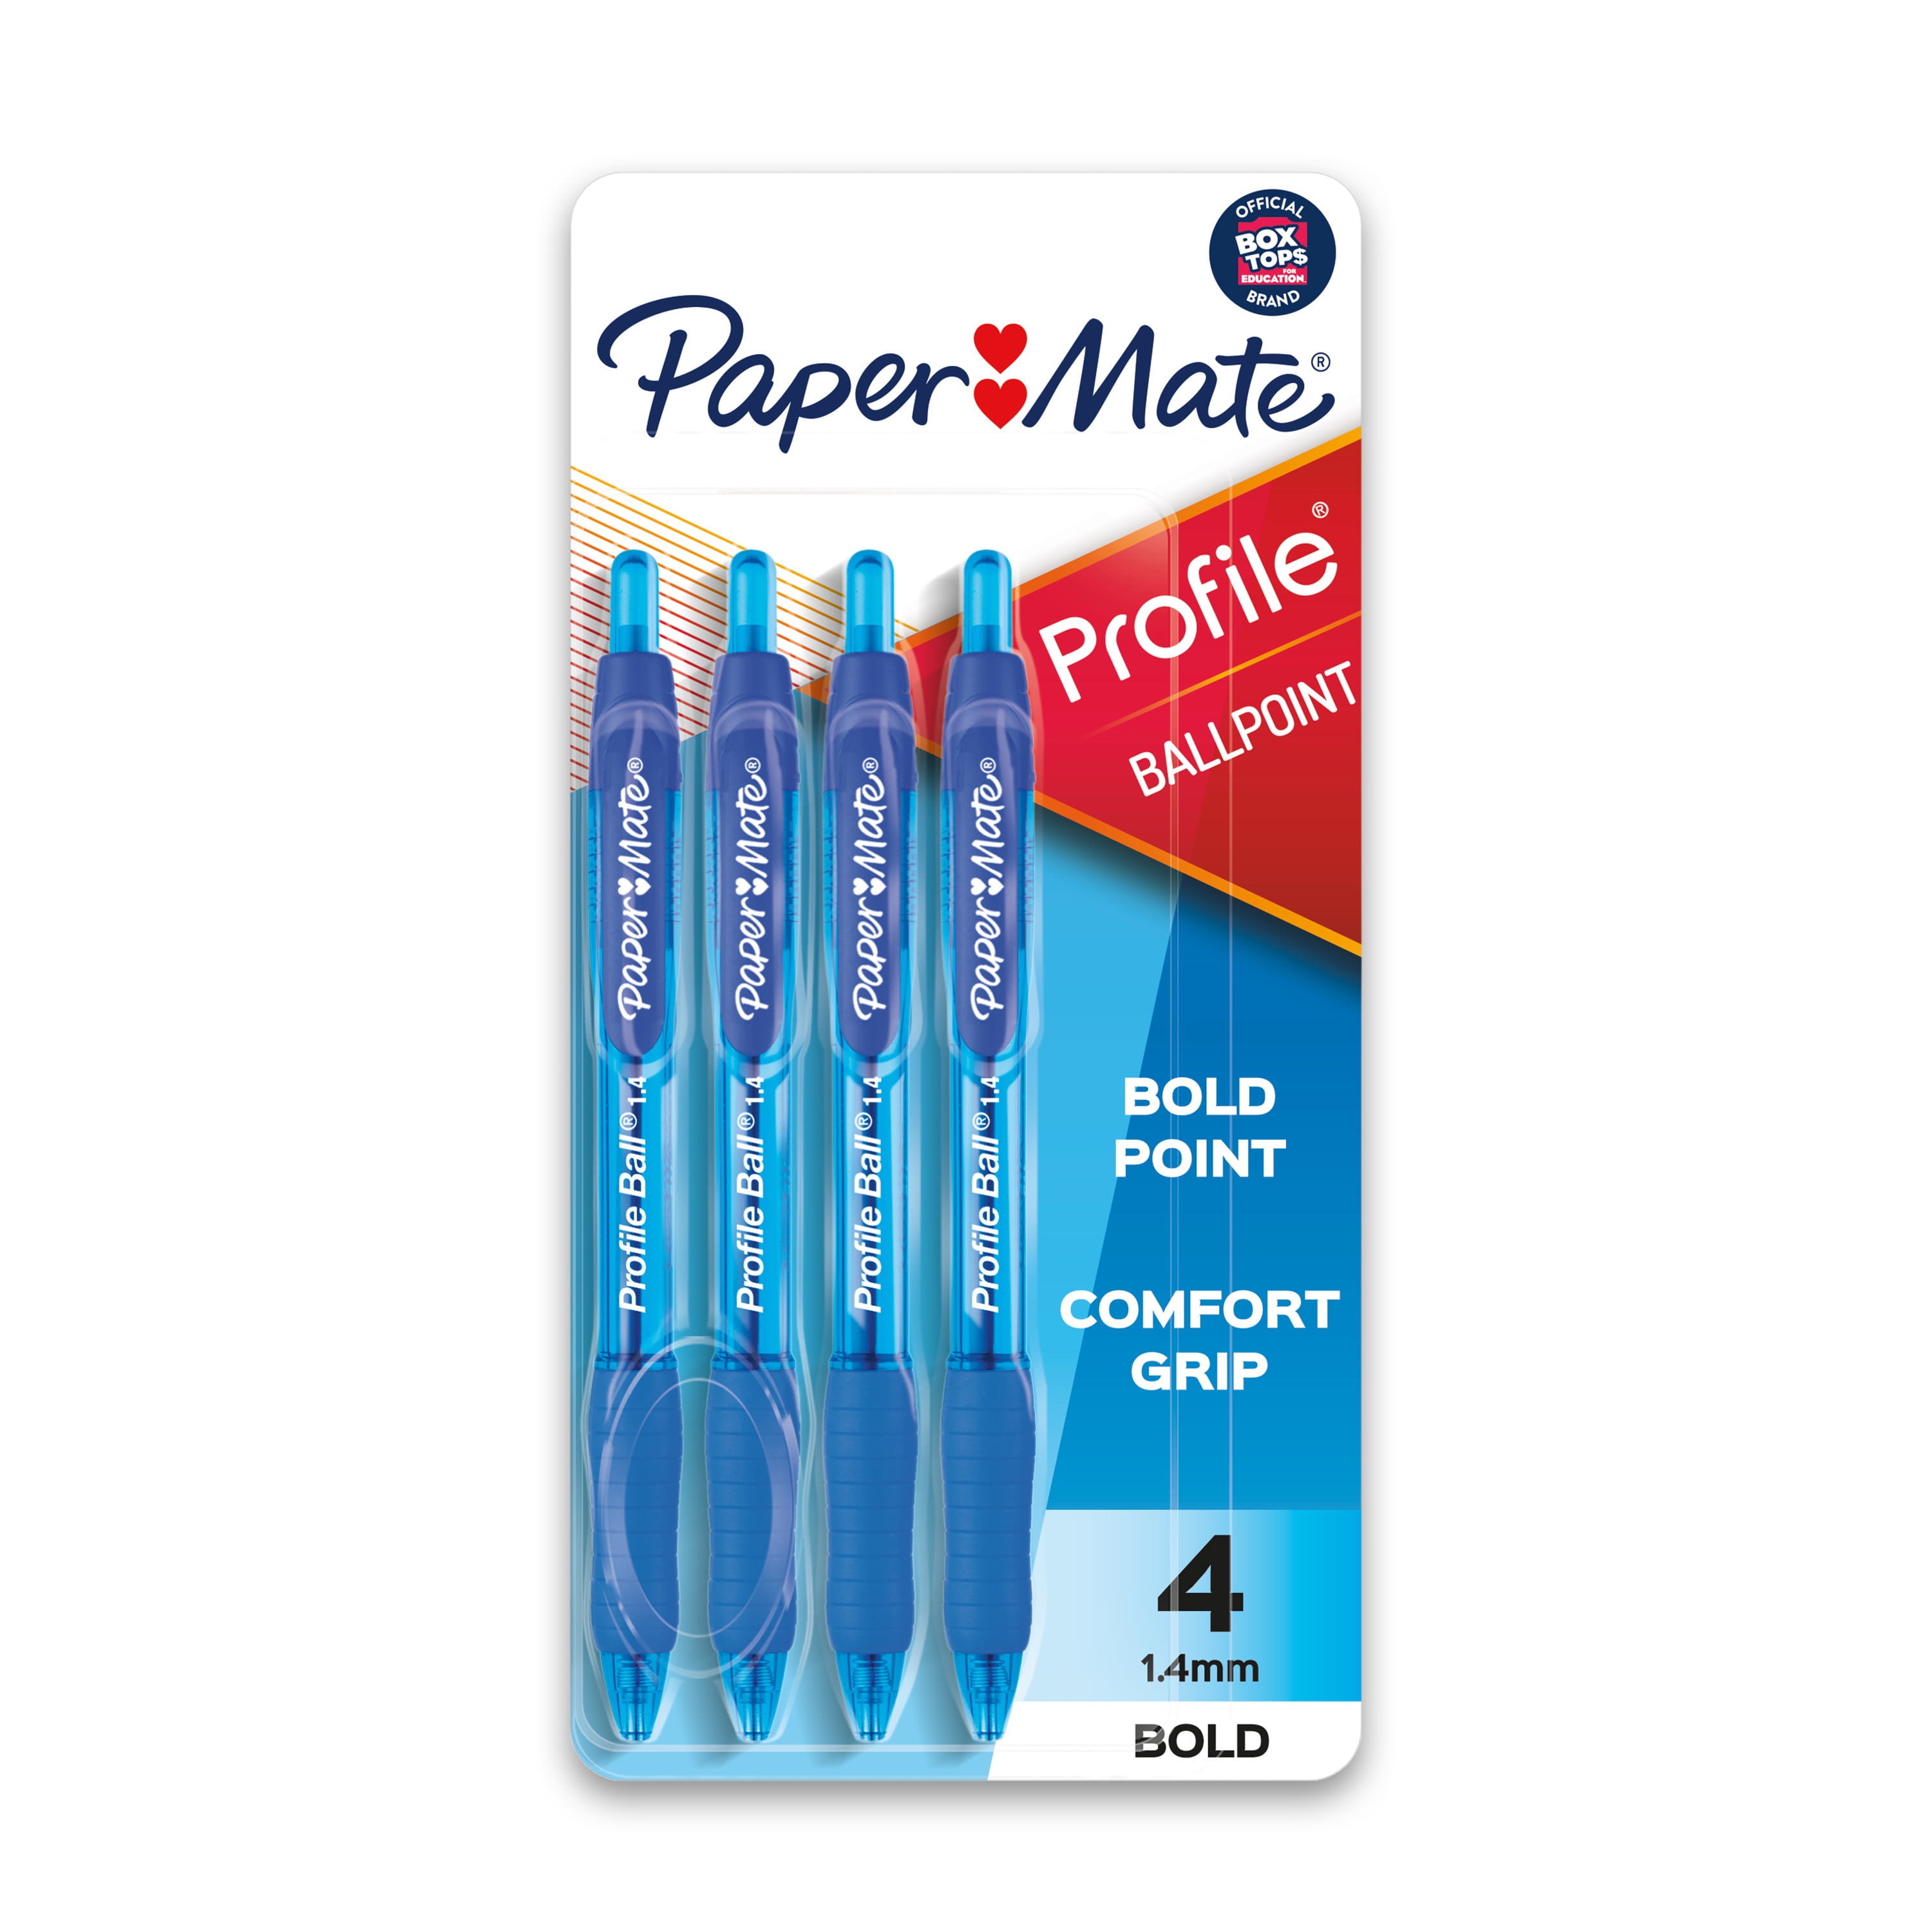 Painters Medium Point Yellow Permanent Paint Pen, 1 Each 